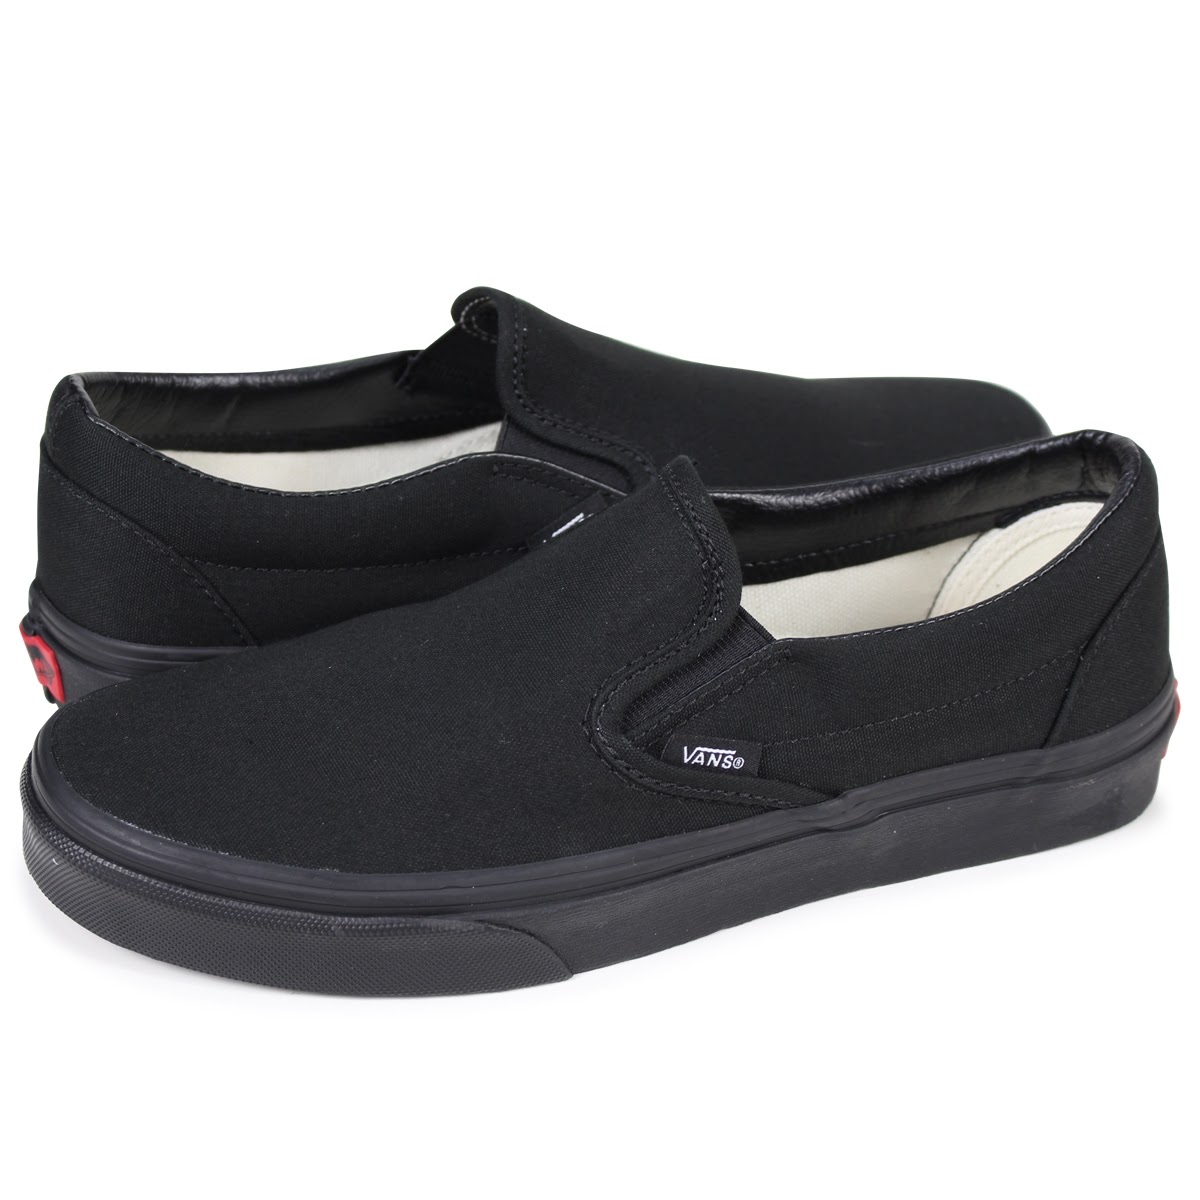 Giày Vans Classic Slip-on Black item “chấp” mọi phong cách hiệu quả